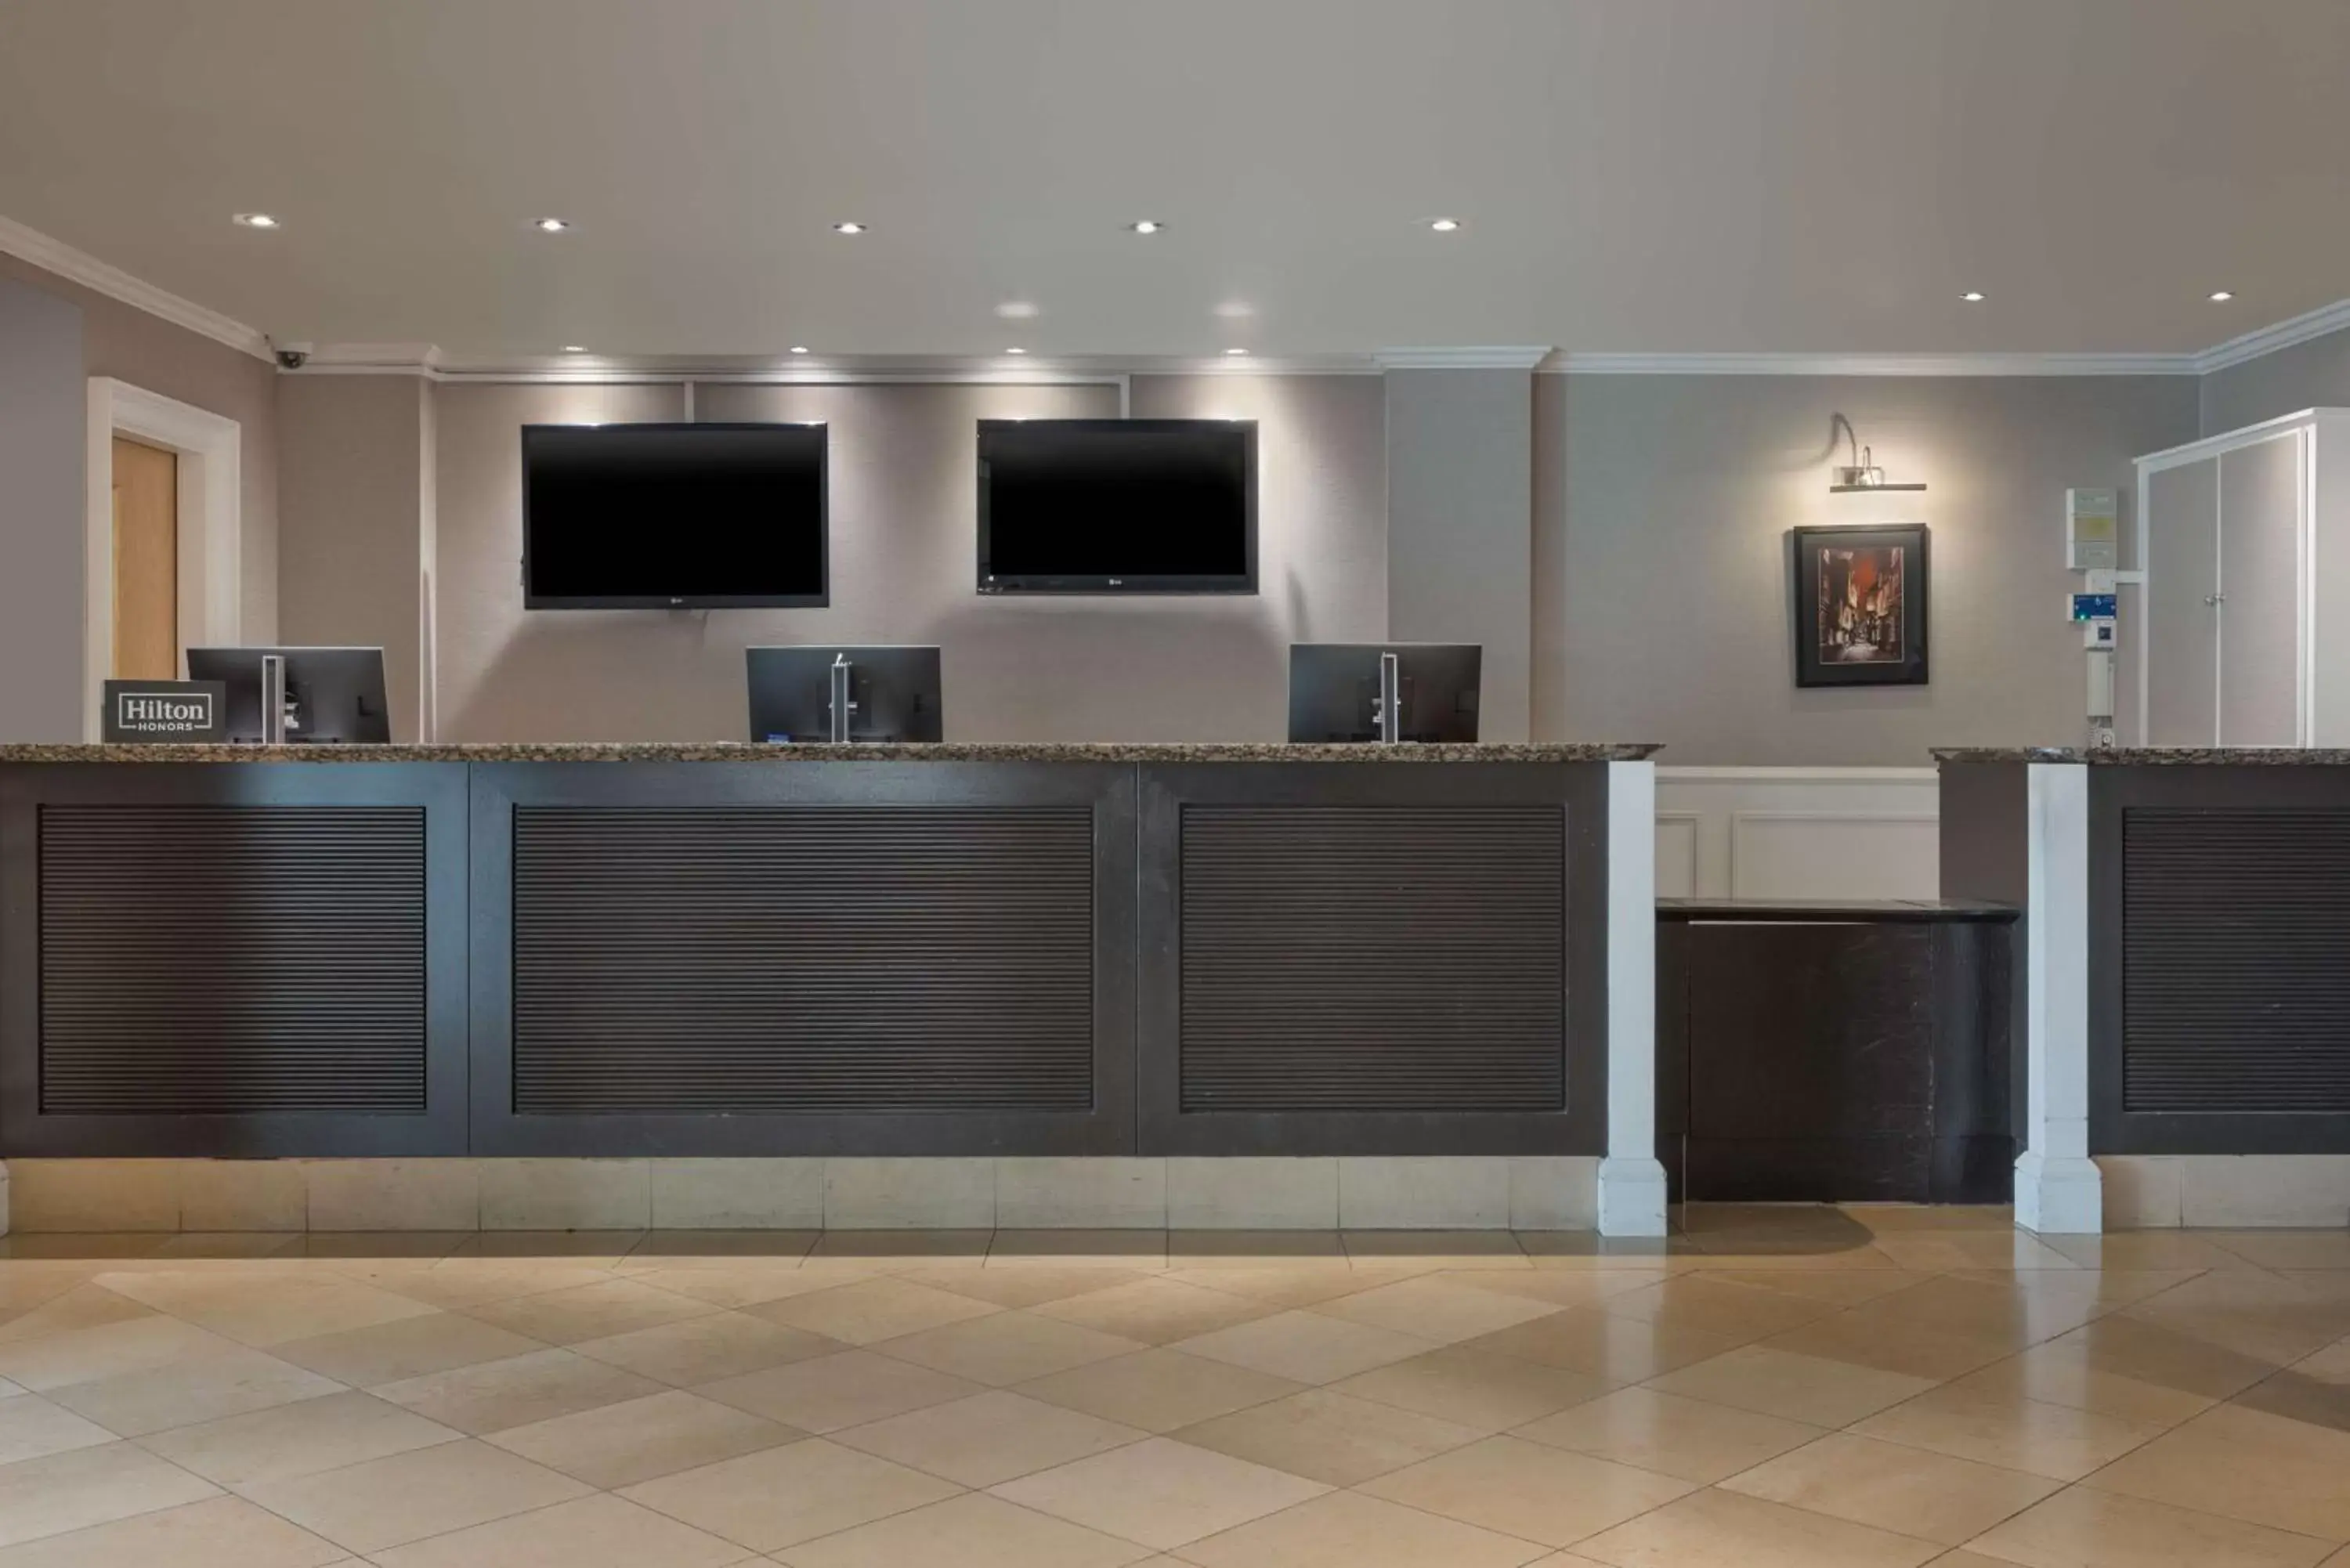 Lobby or reception, Lobby/Reception in Hilton York